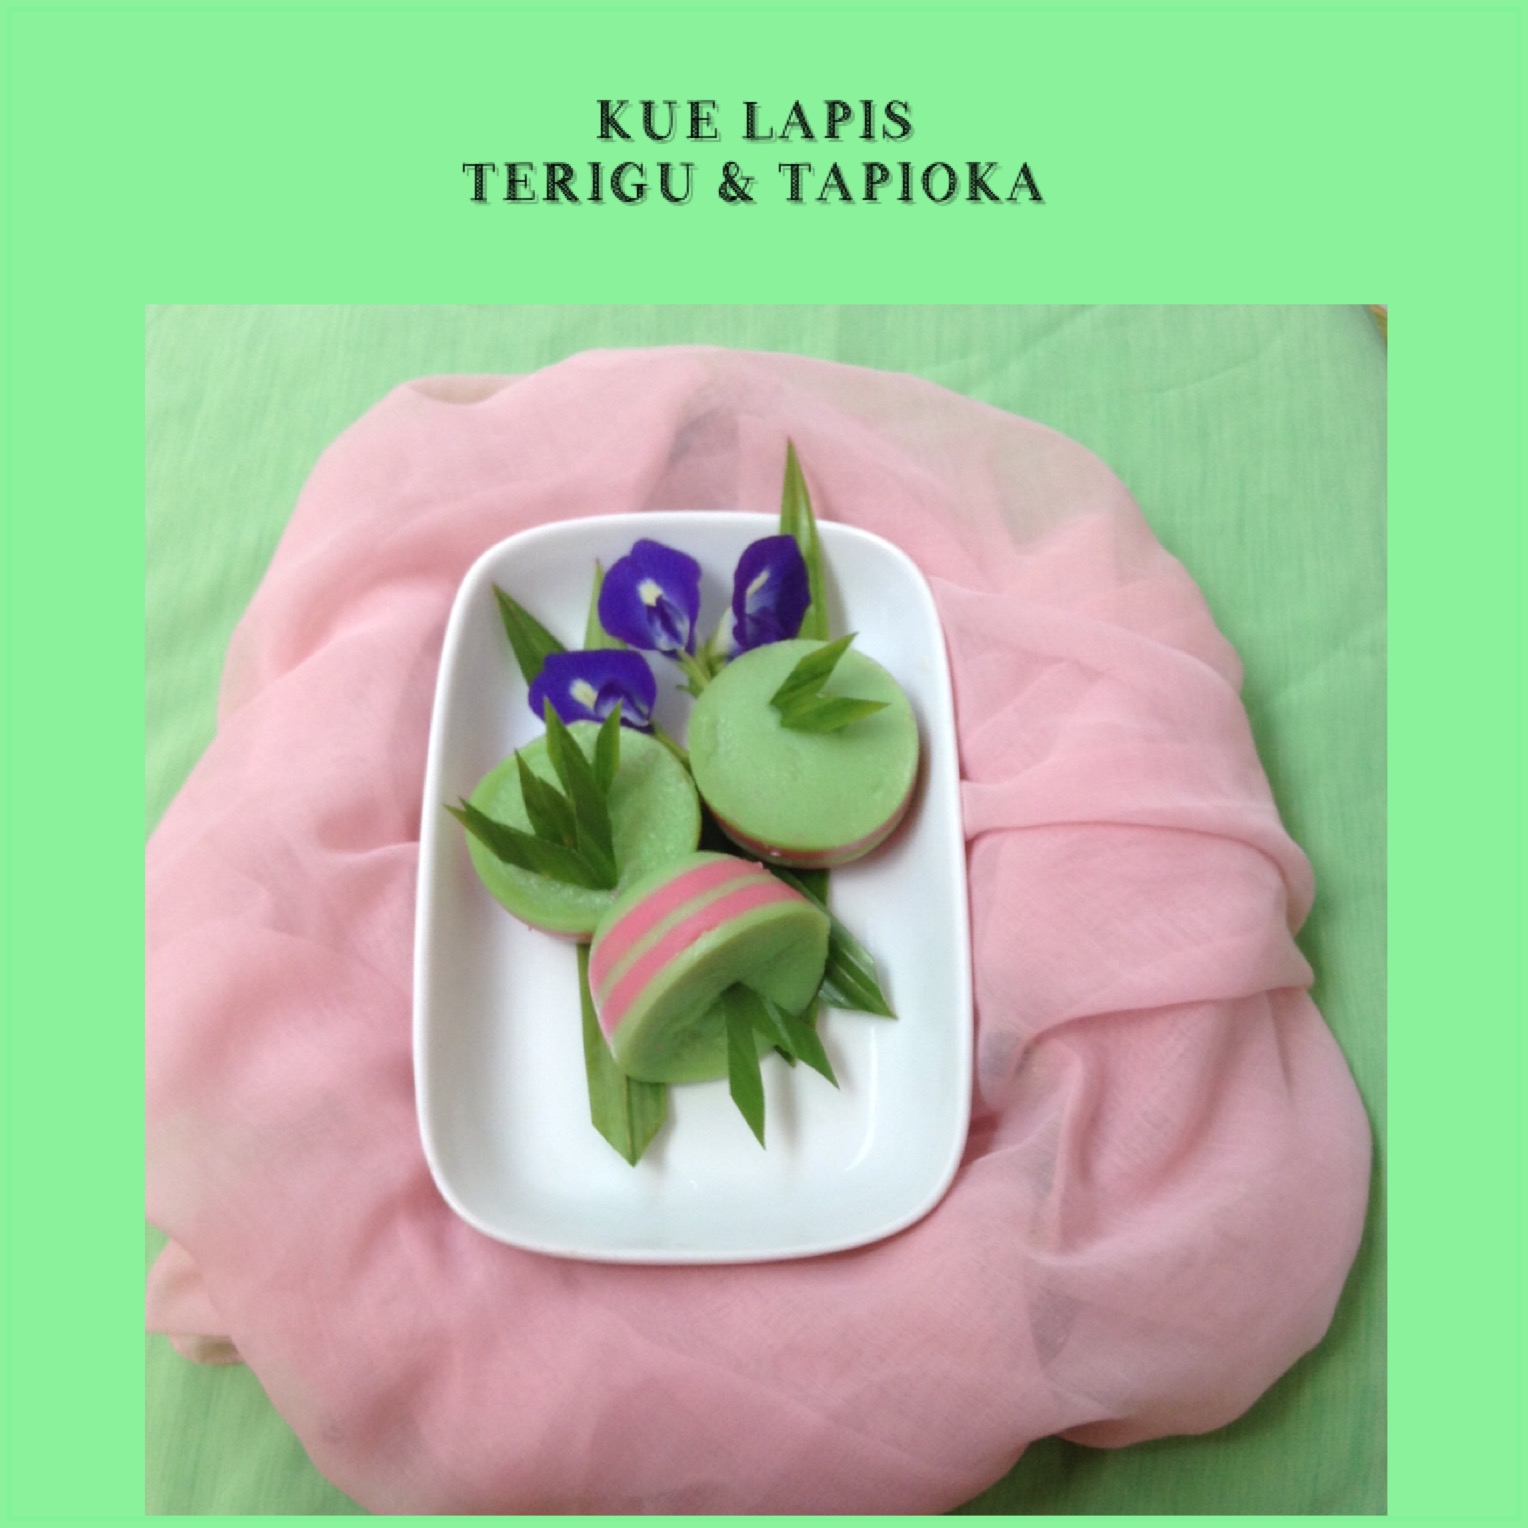 Resep Kue Lapis Terigu & Tapioka